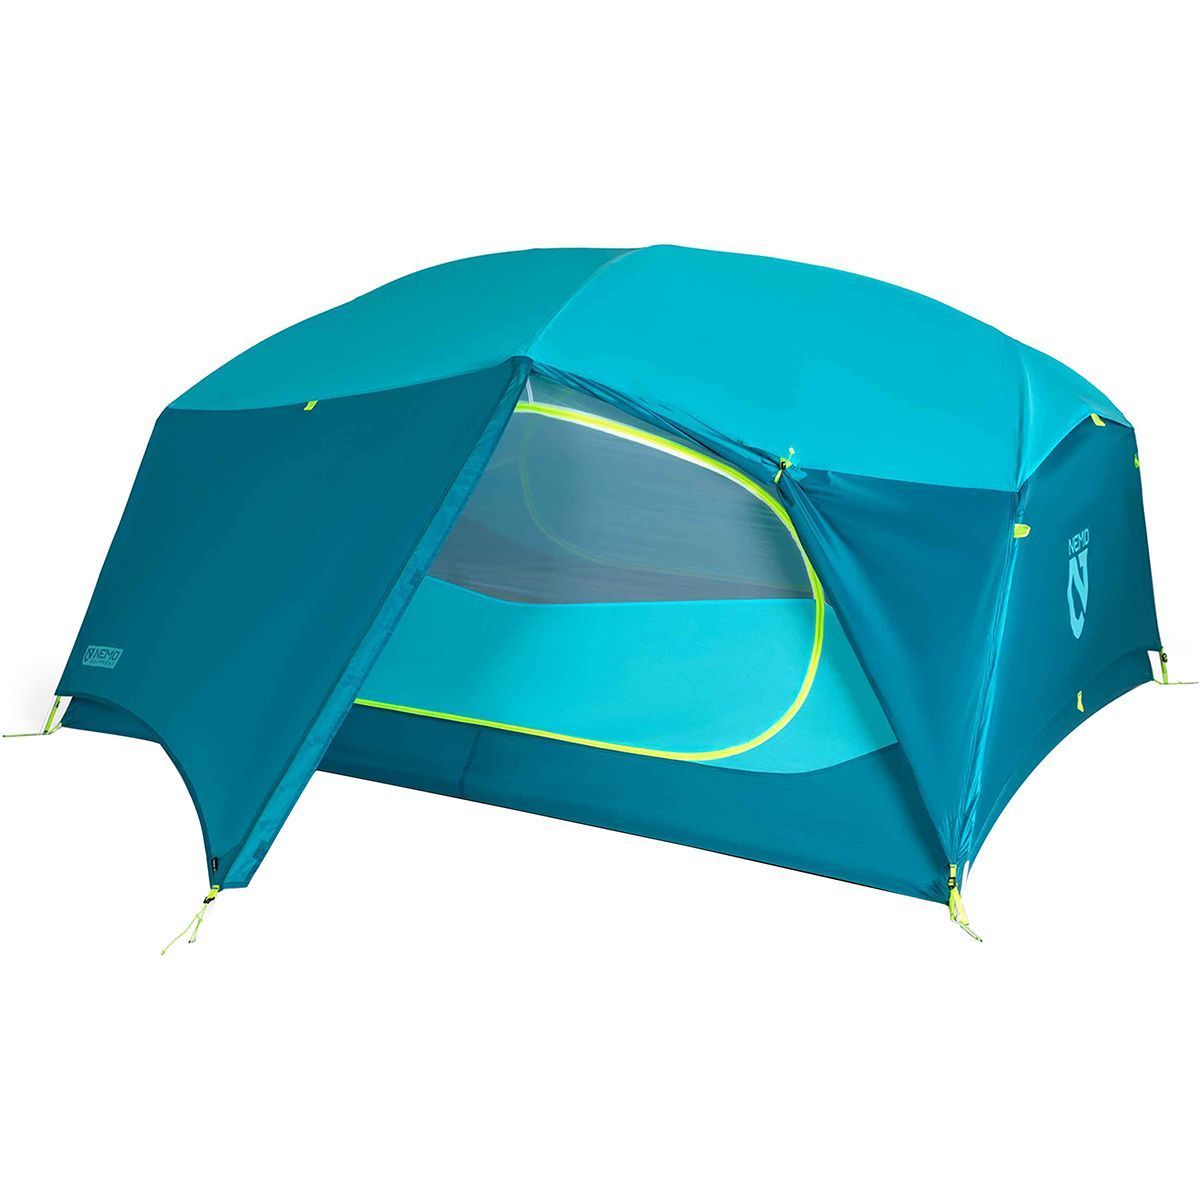 NEMO Equipment Inc. Aurora 3P Tent: 3-Person 3-Season